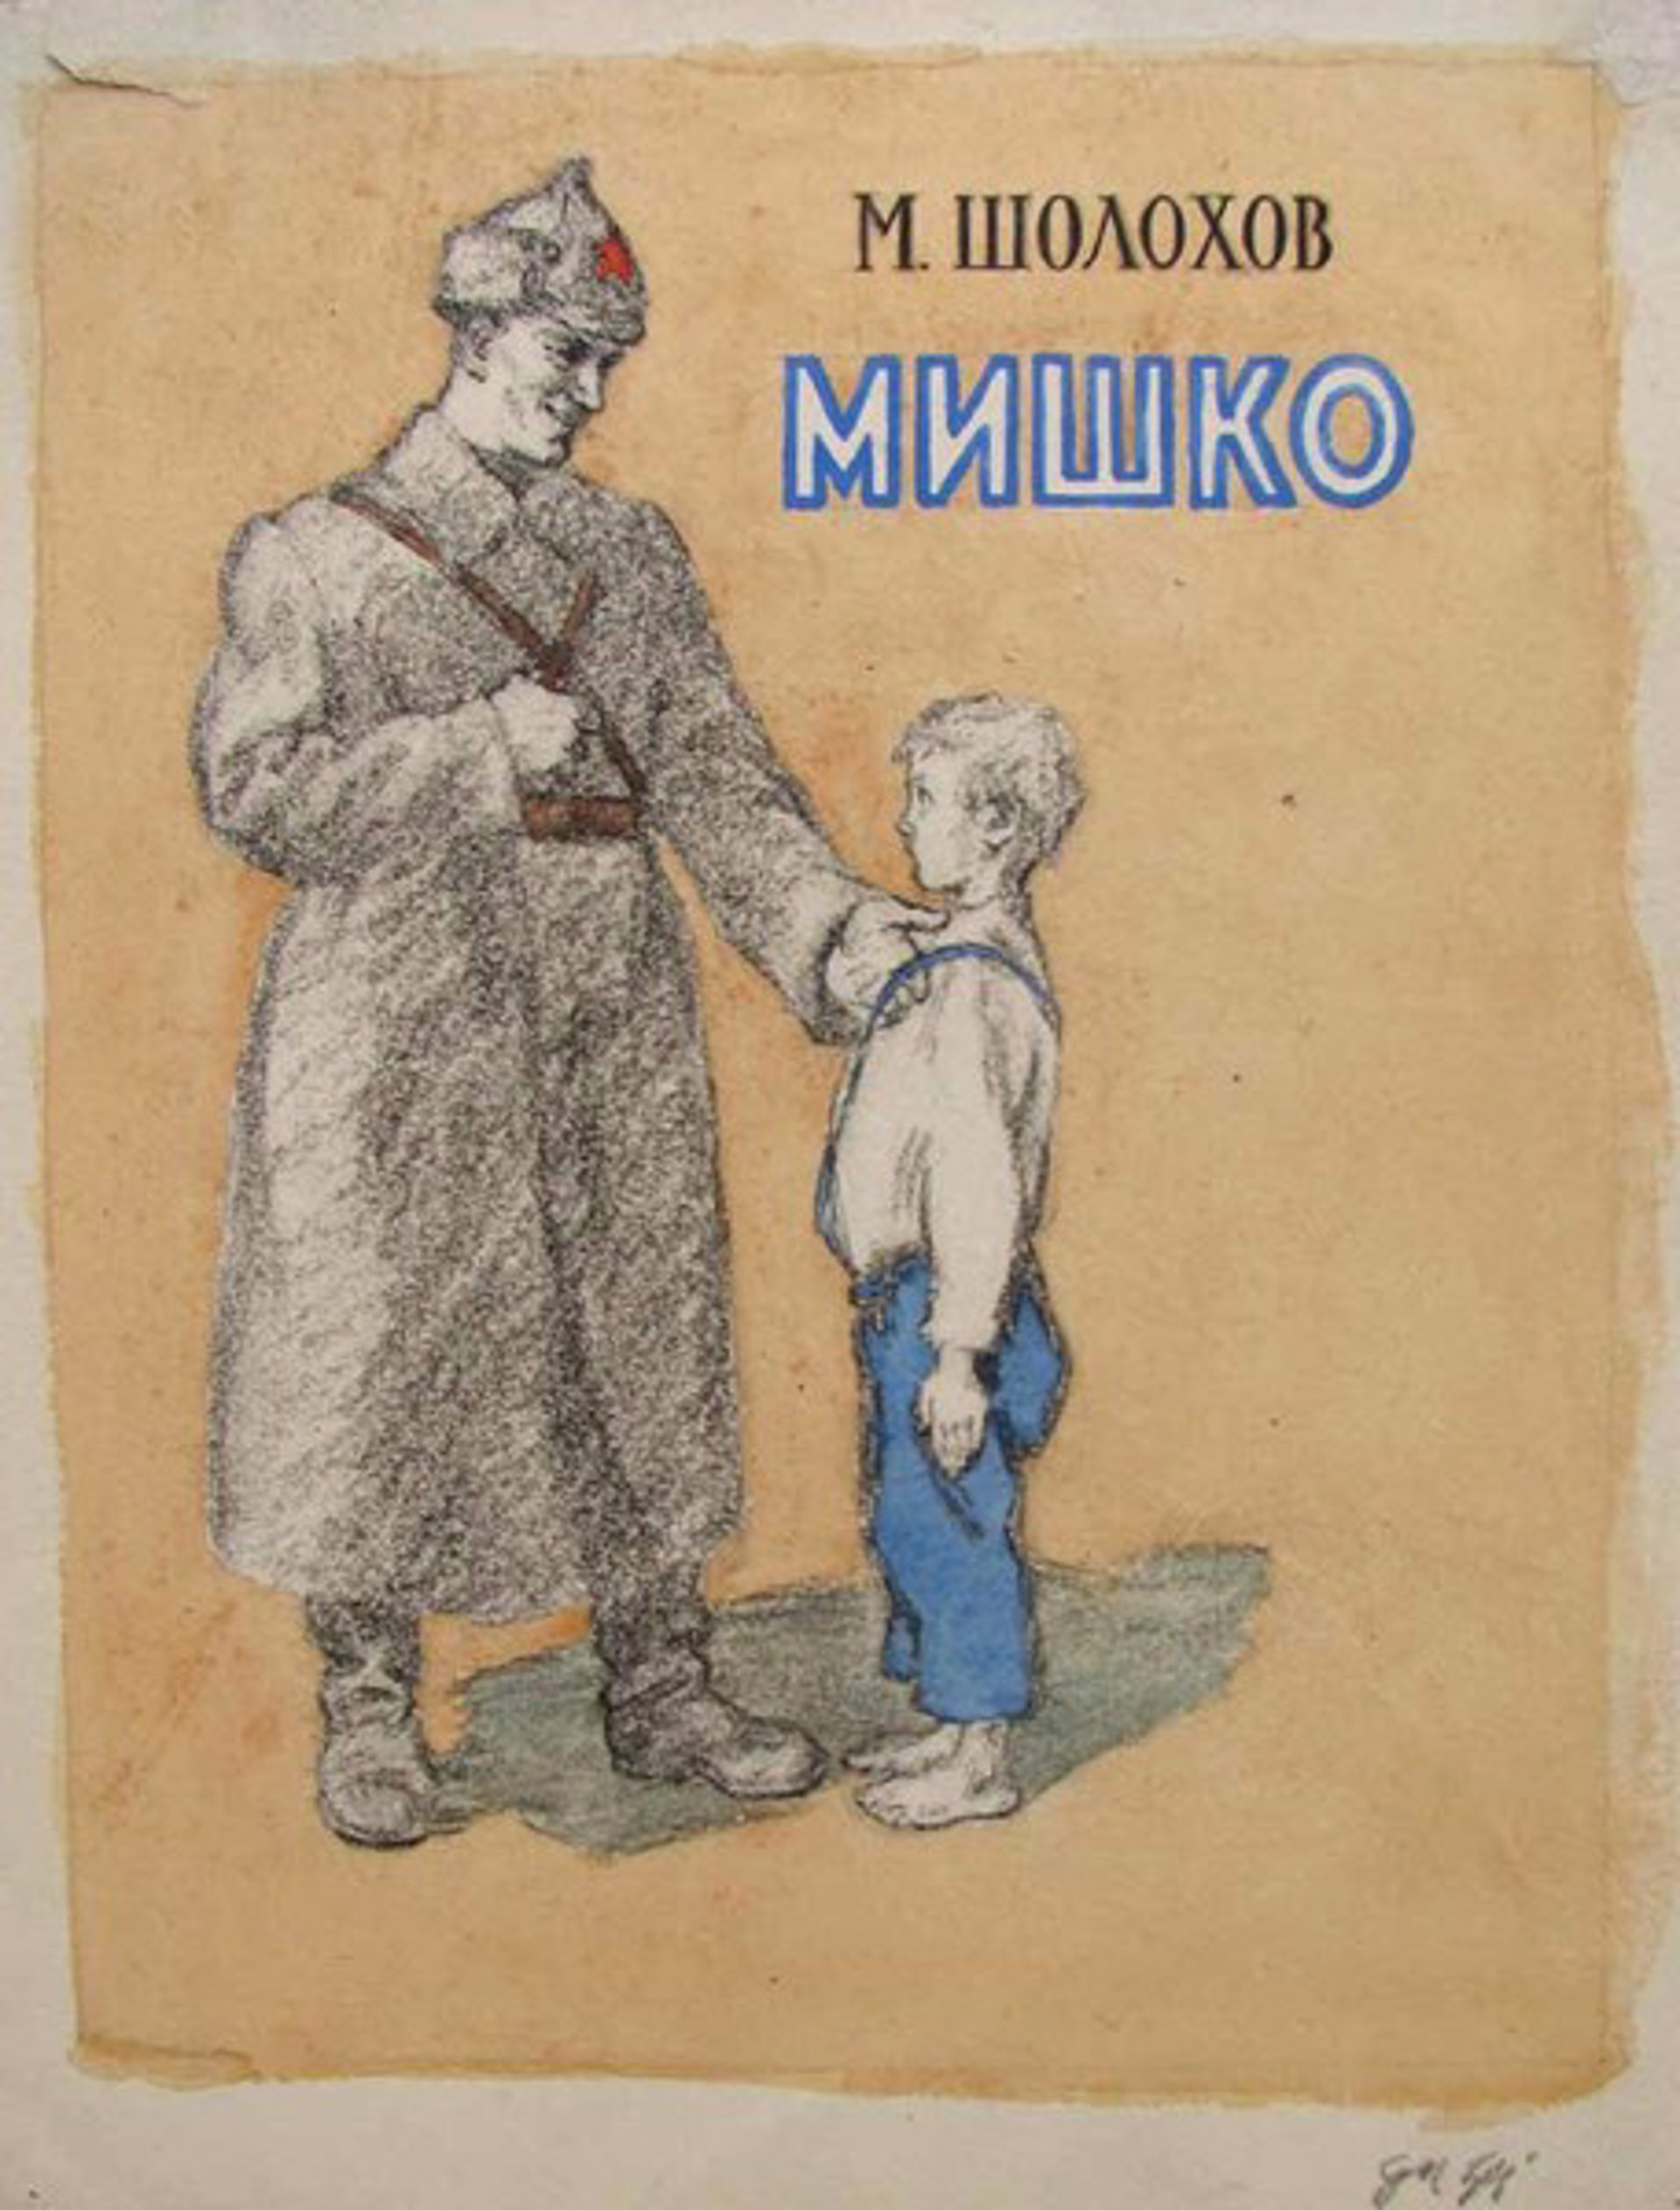 Book Cover to Mishko by M. Sholokkov by Fedir Glyshuk